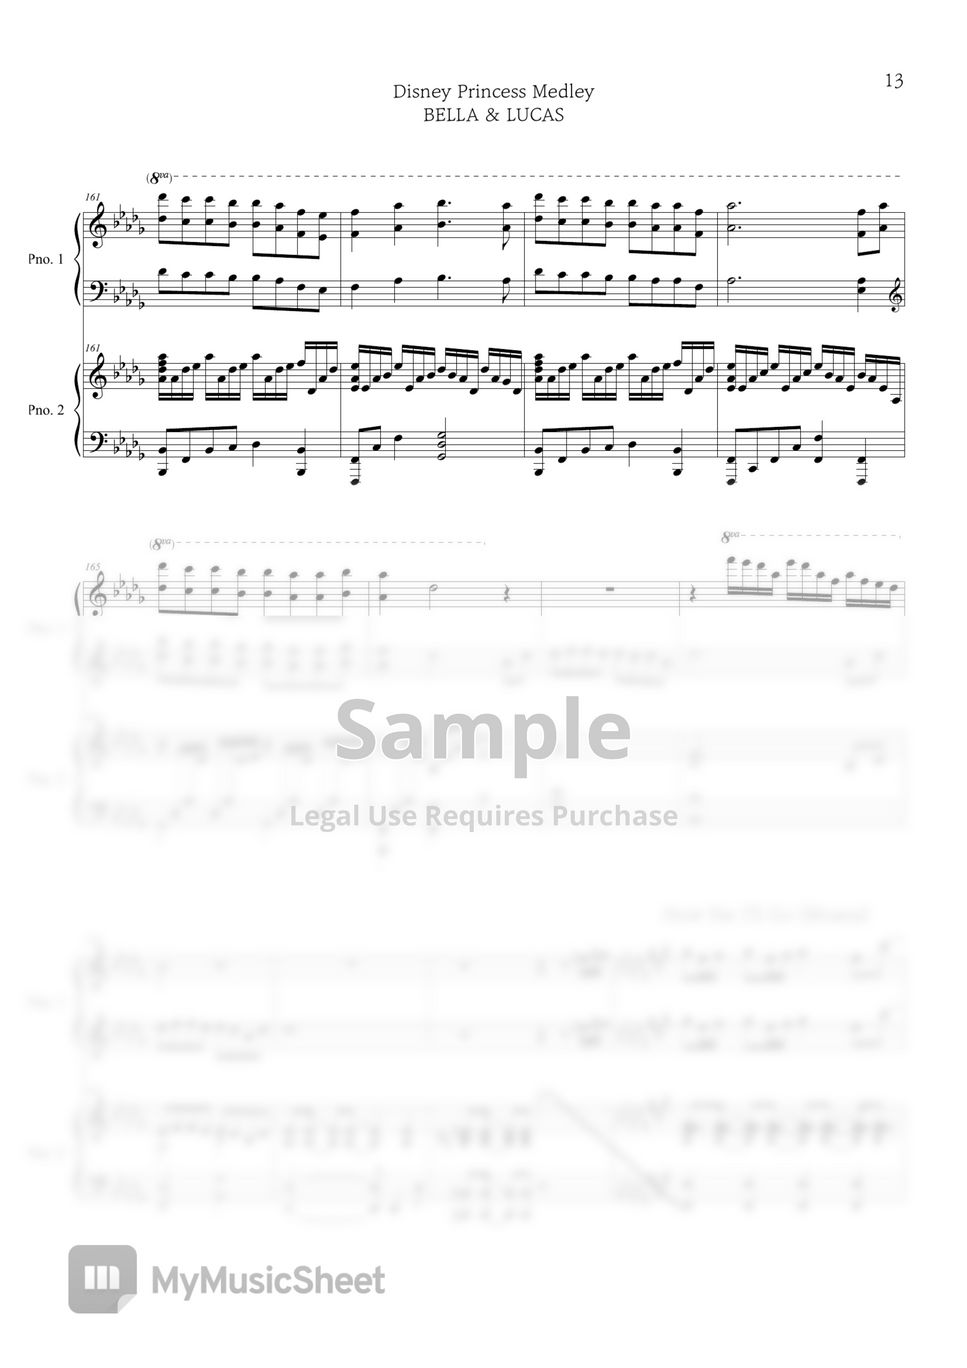 Princess Medley (4hands piano) - Disney by BELLA&LUCAS